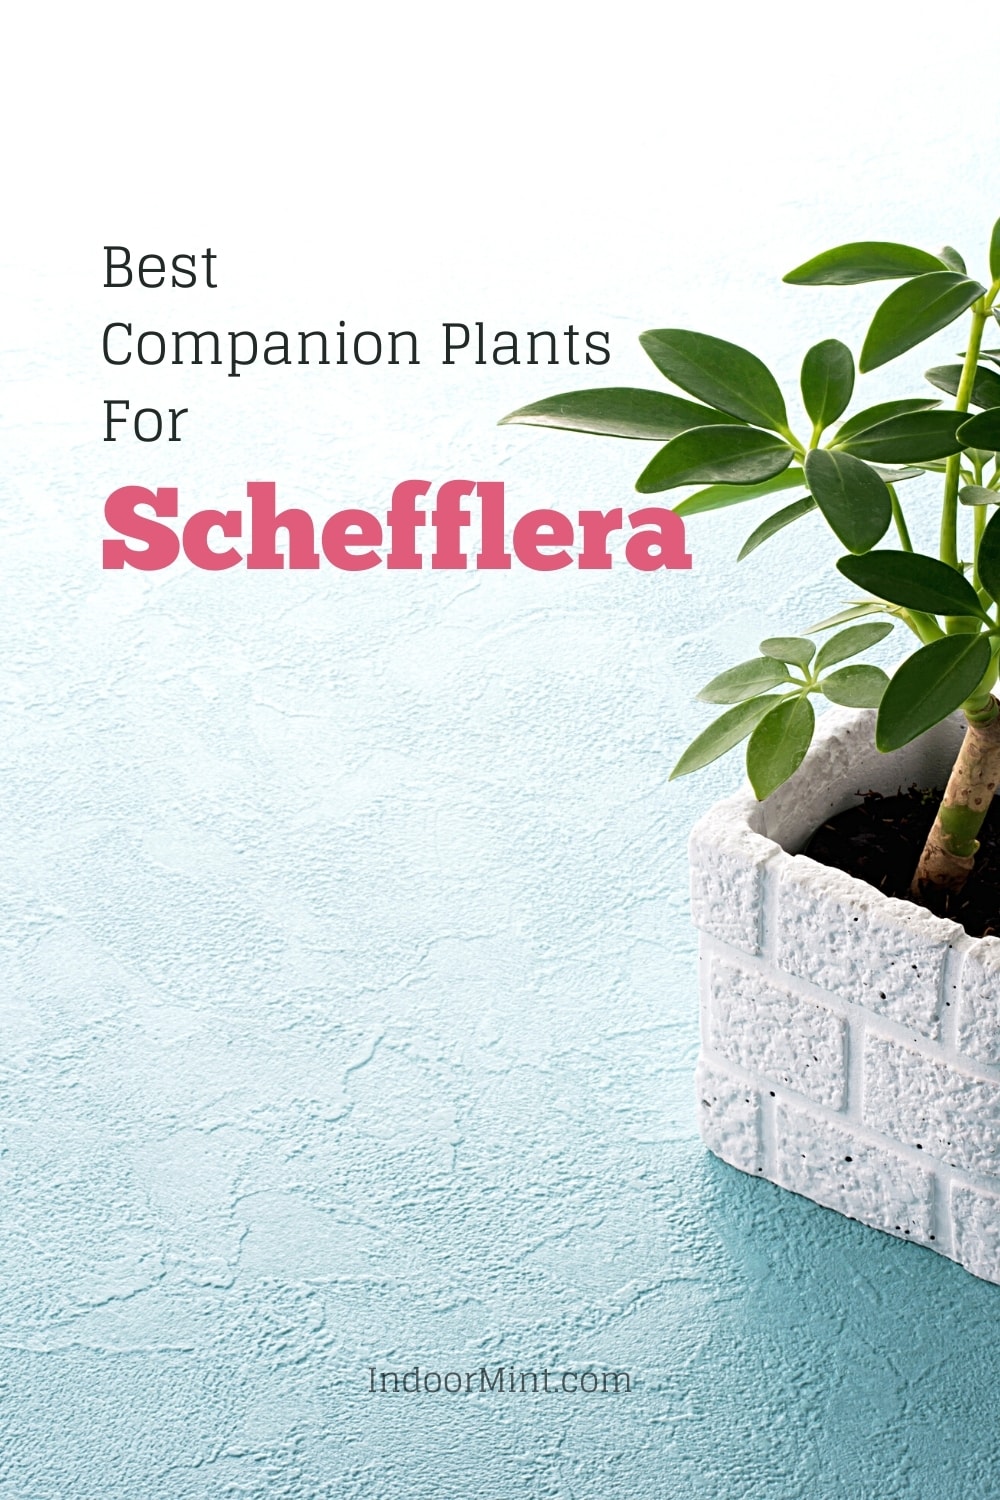 schefflera companion plants guide cover image